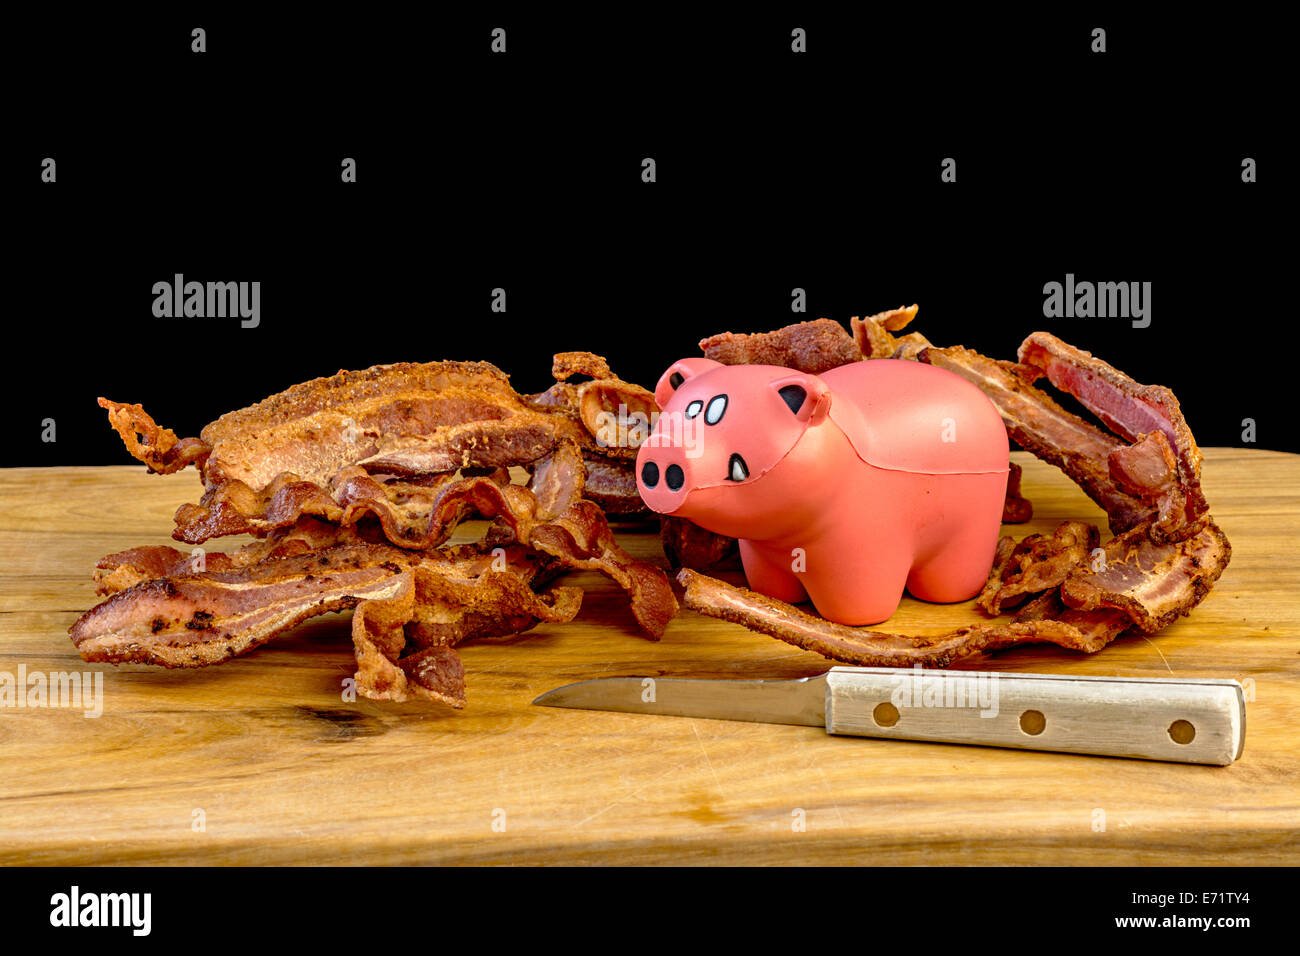 Cochon jouet avec du bacon cuit Banque D'Images